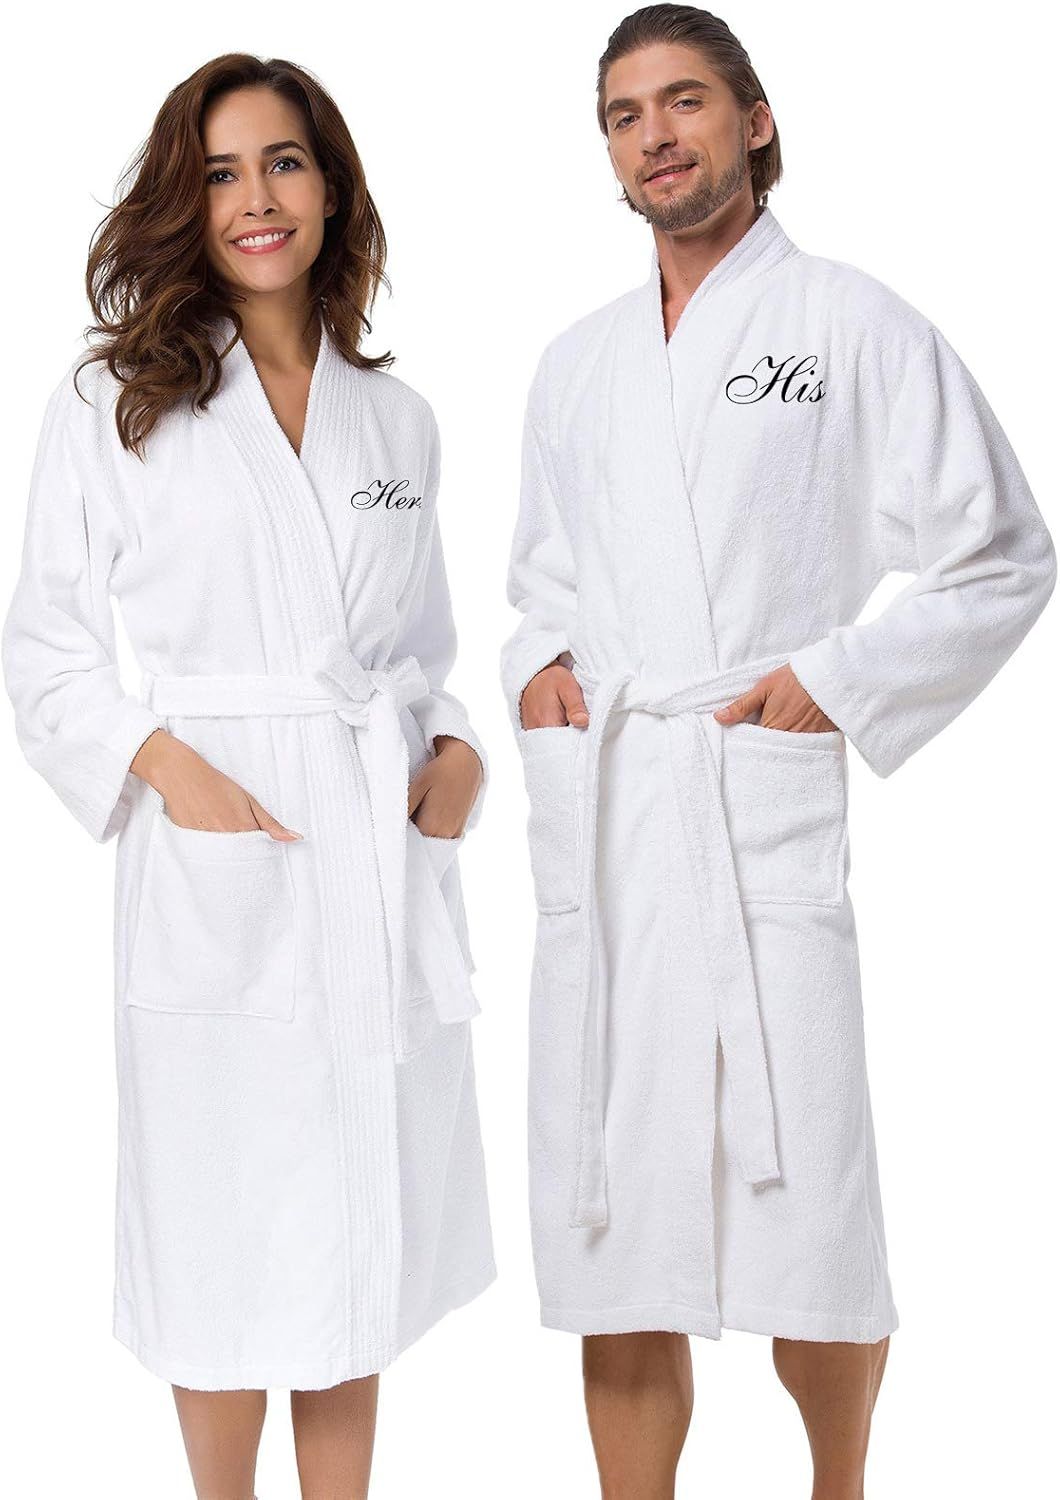 AW BRIDAL 2Pcs Couple's Terry Cotton Kimono Robe 100% Cotton Spa Bathrobe Set - Unisex Hotel Robe... | Amazon (US)